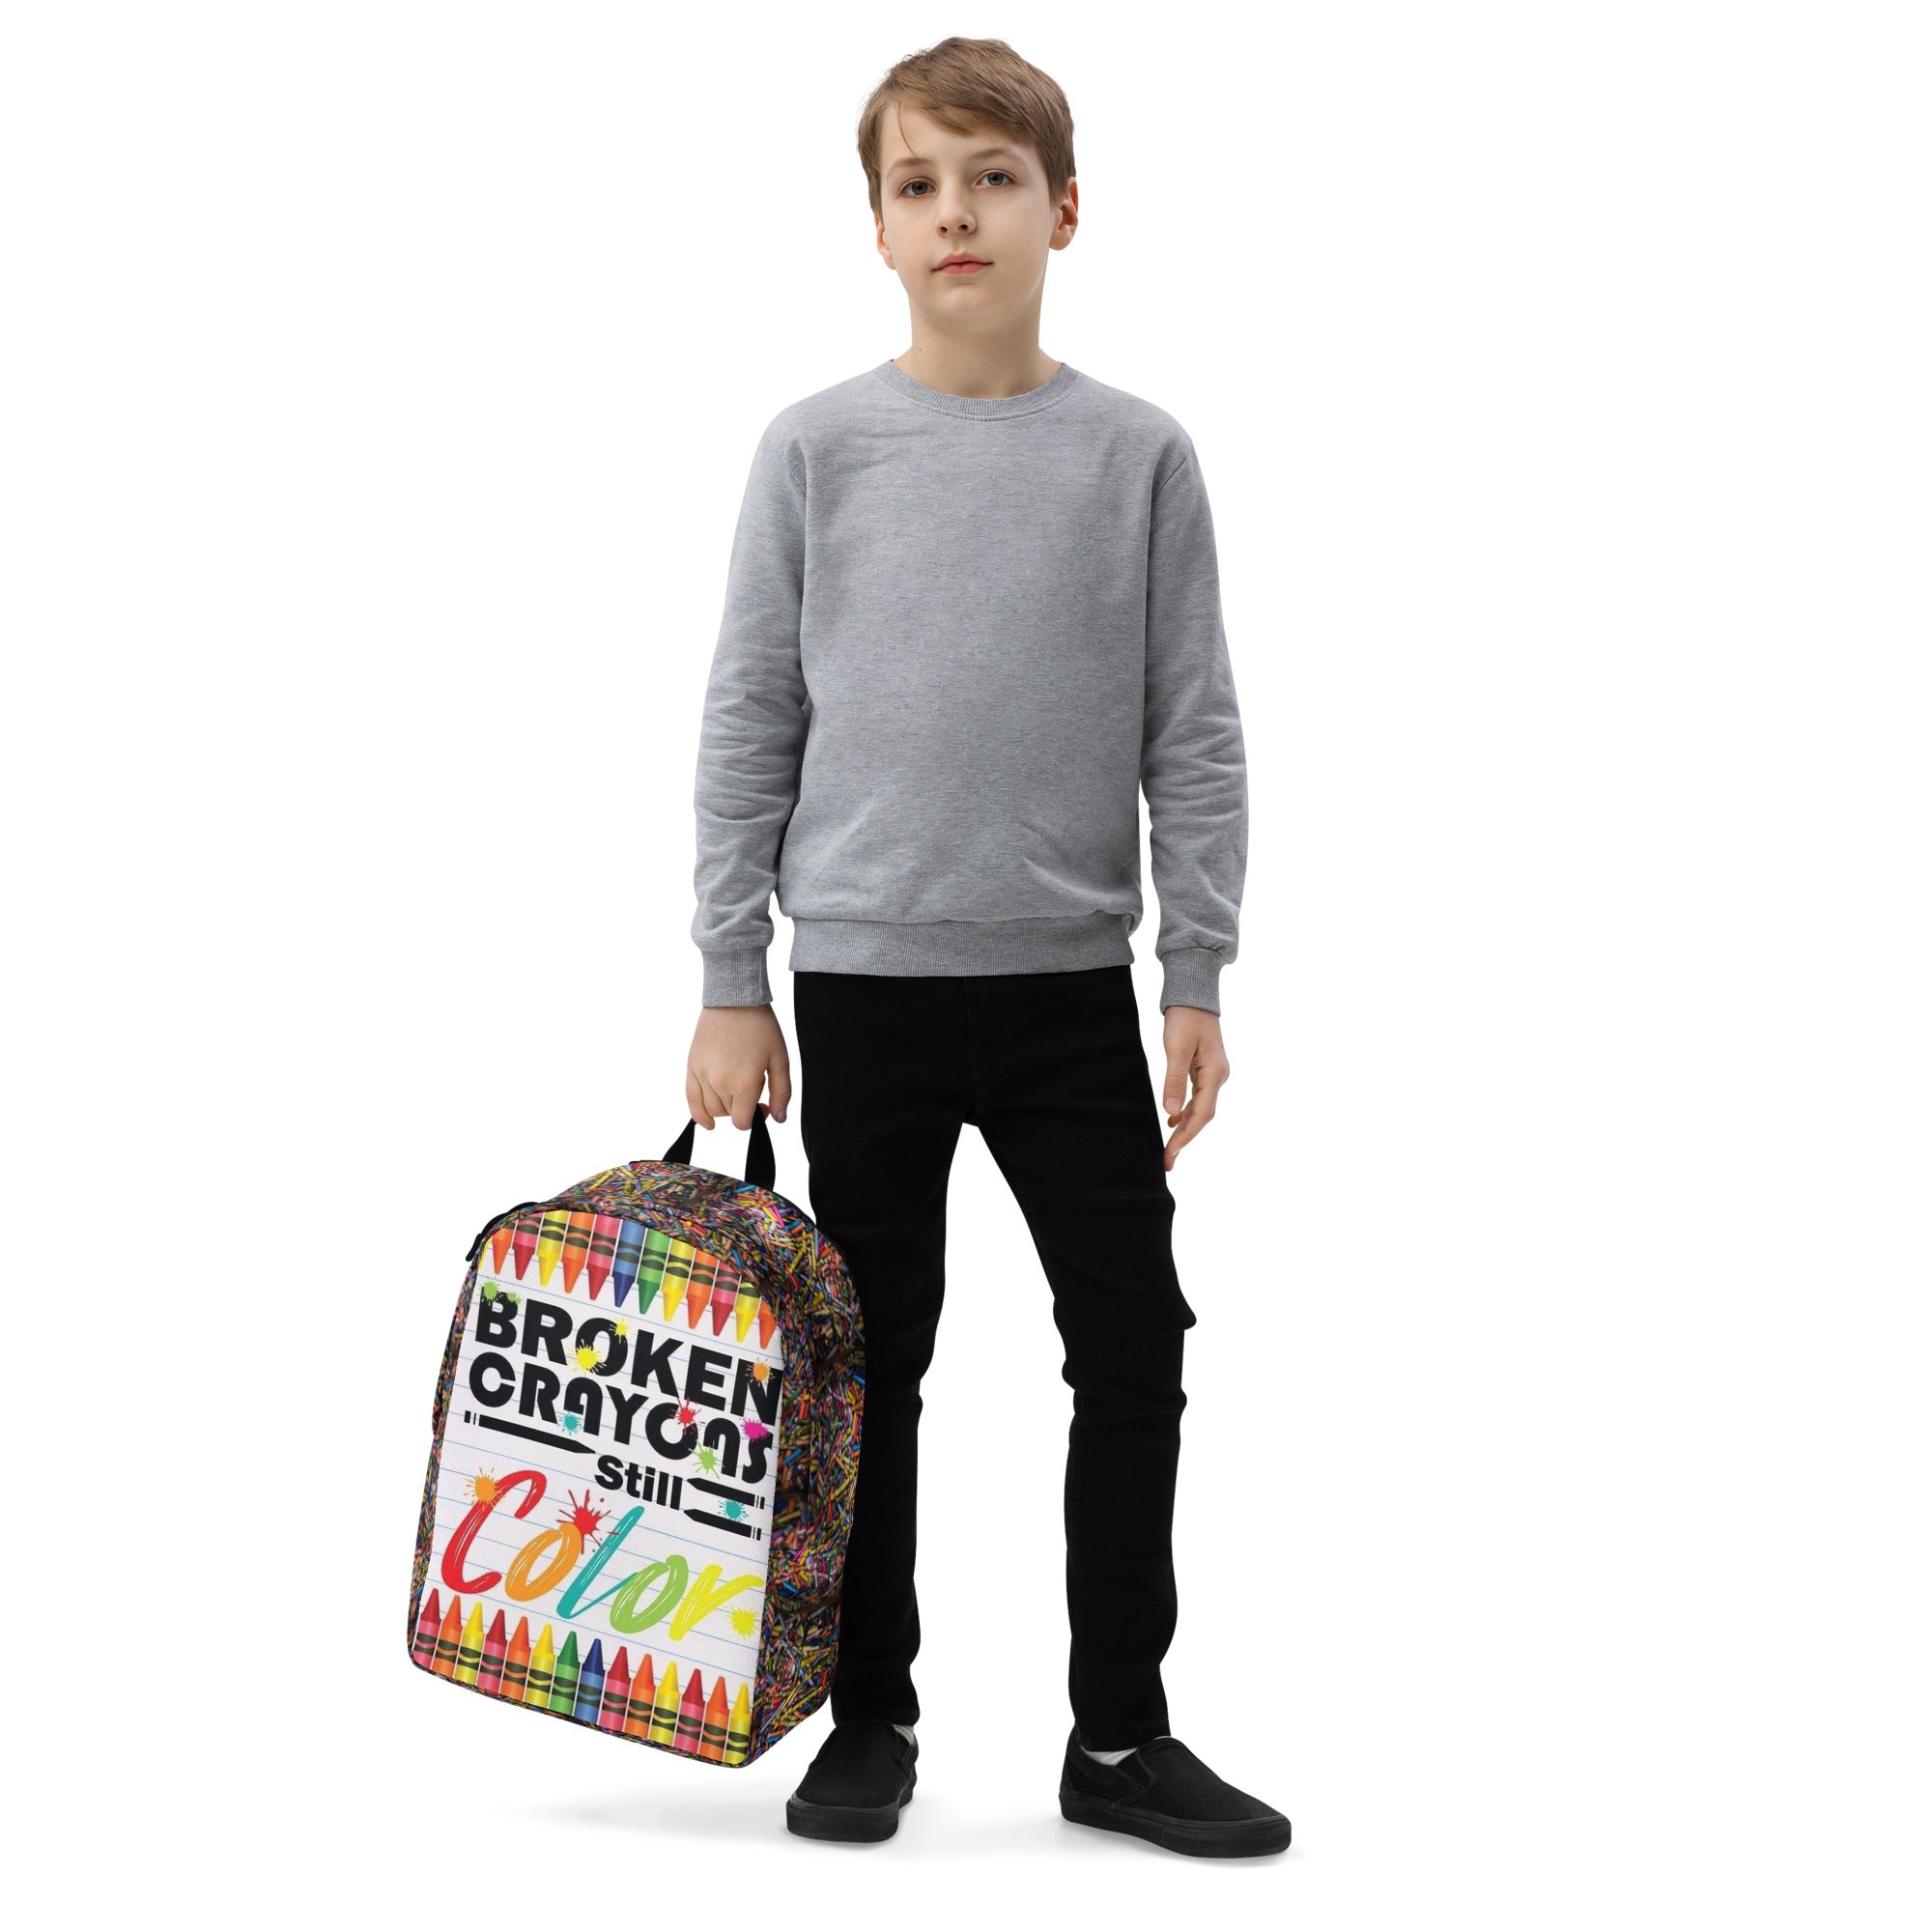 Broken Crayons #StandOut Minimalist Backpack